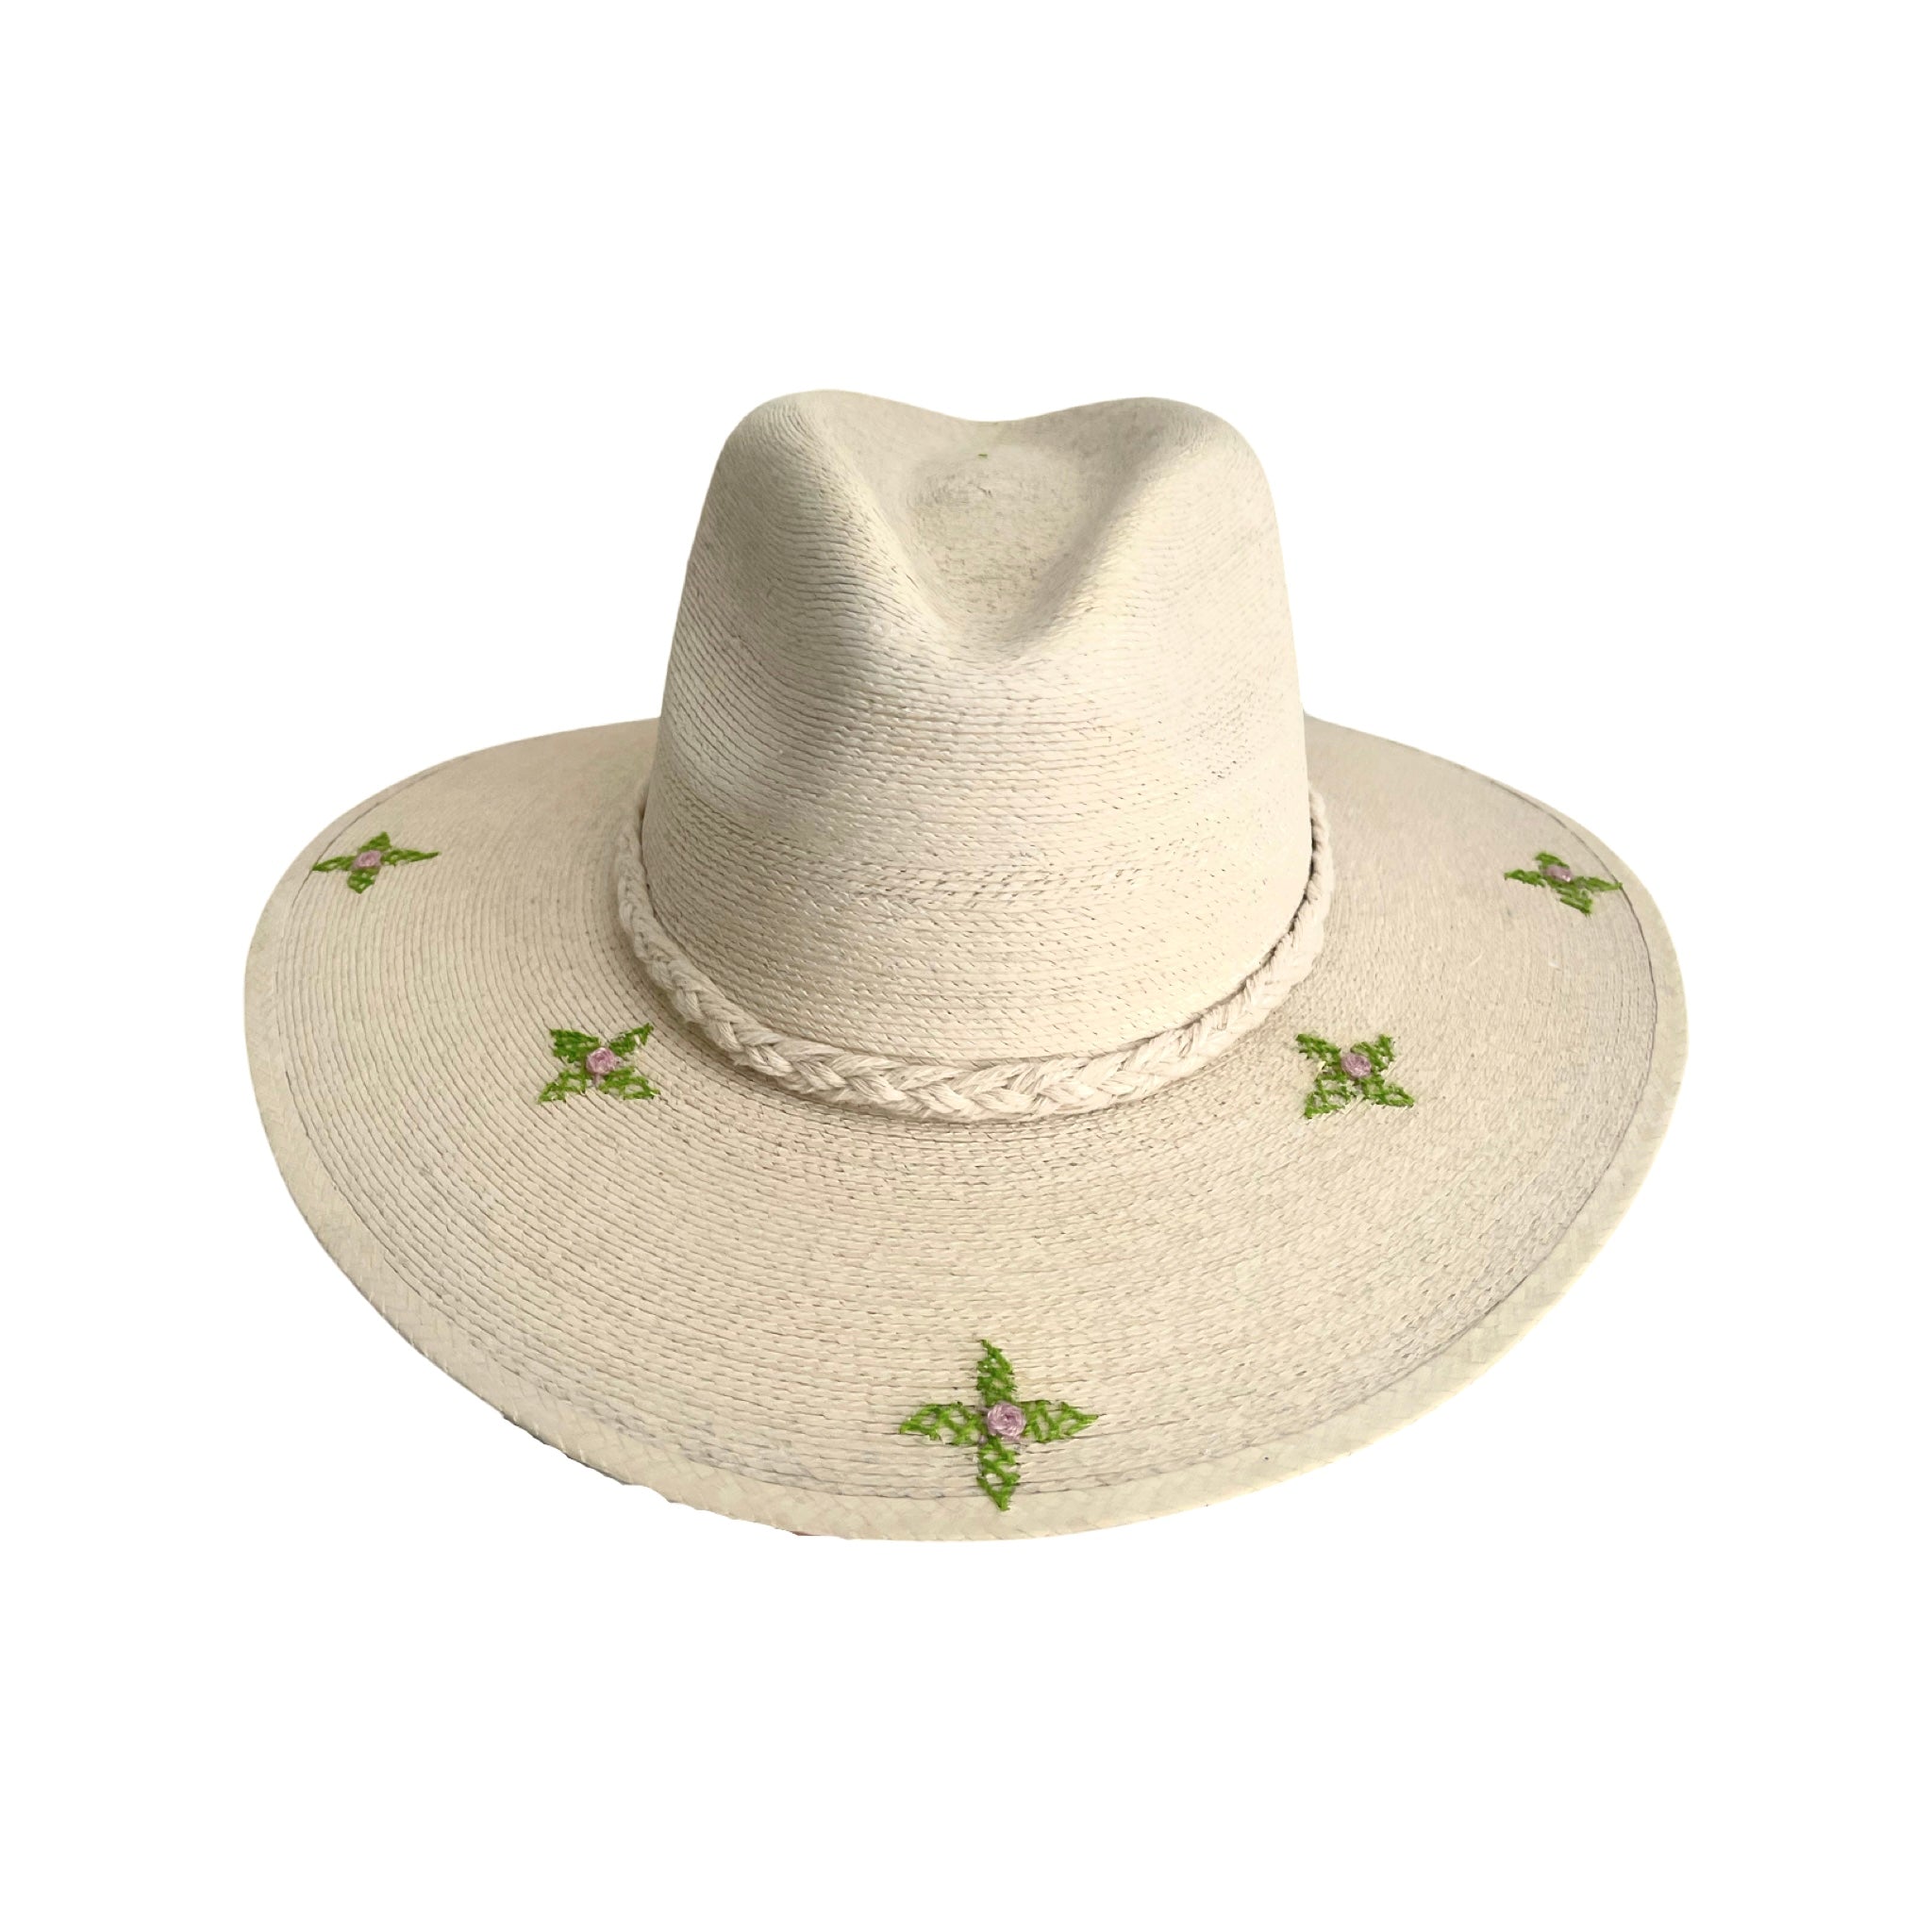 Exclusive Verde Floras Hat by Corazon Playero